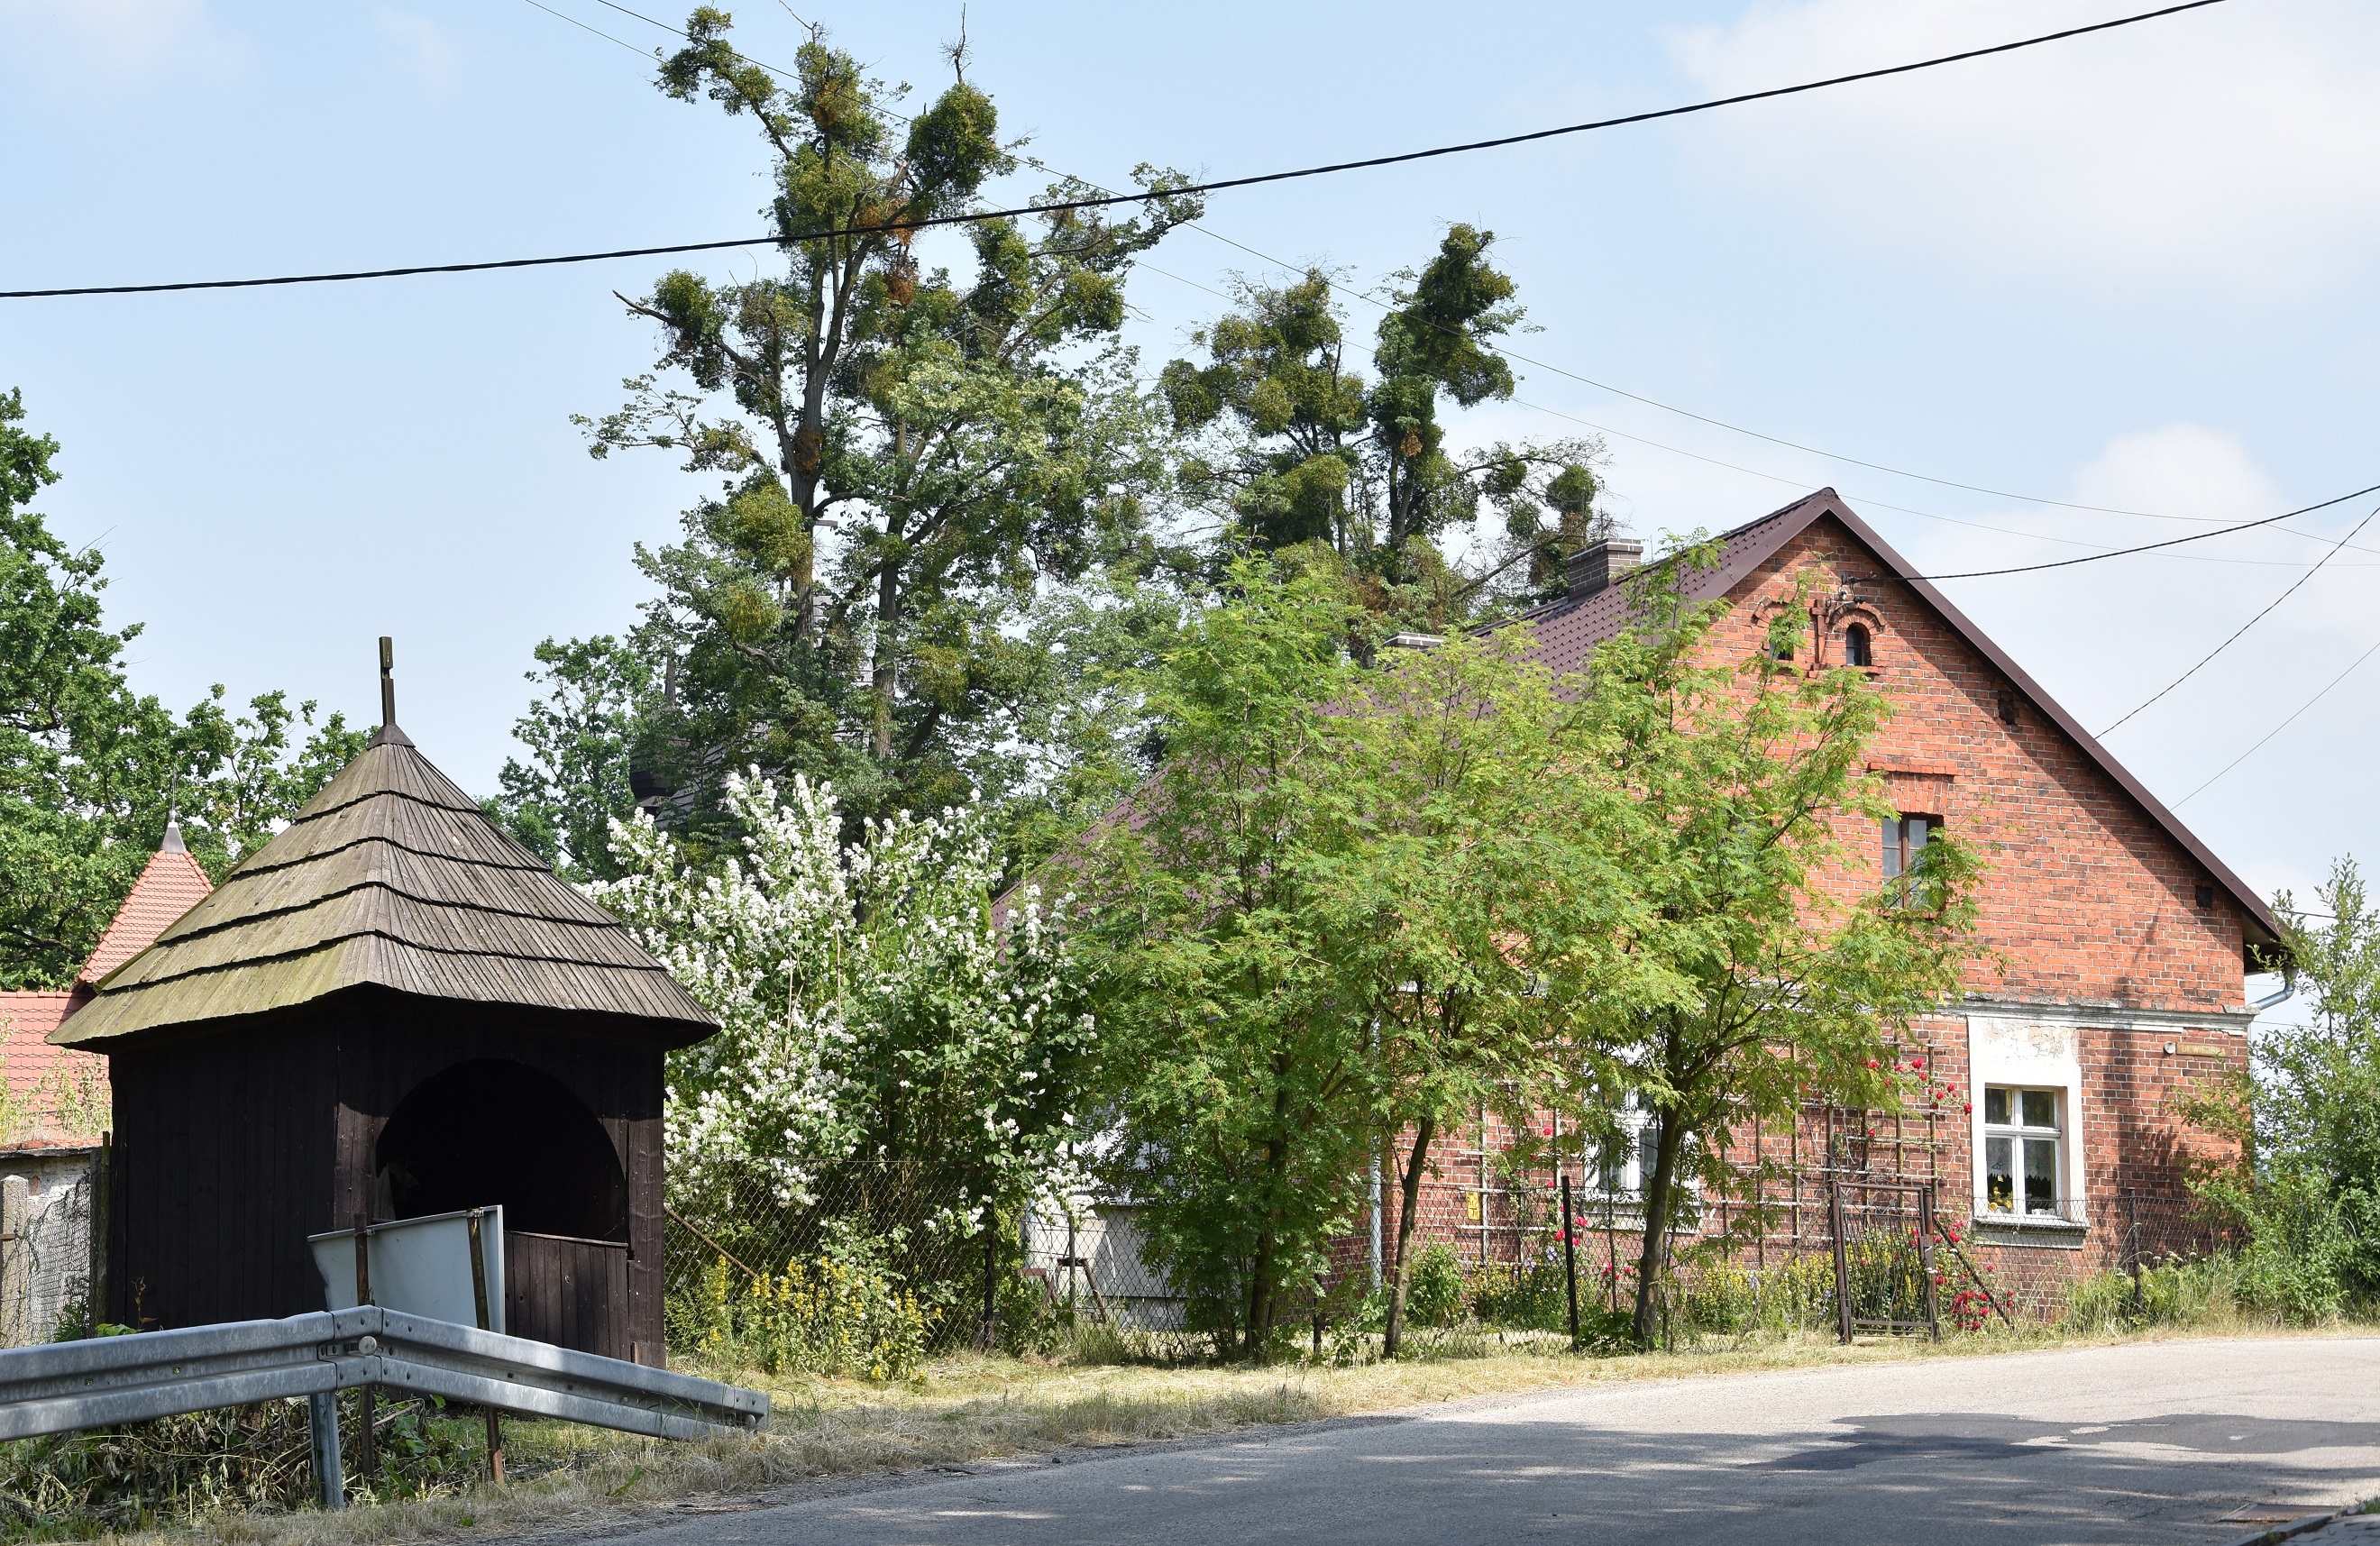 Sierakowice, kapliczka drewniana i budynek z początku XX w. Fot. Maria Lipok-Bierwiaczonek, 2019.